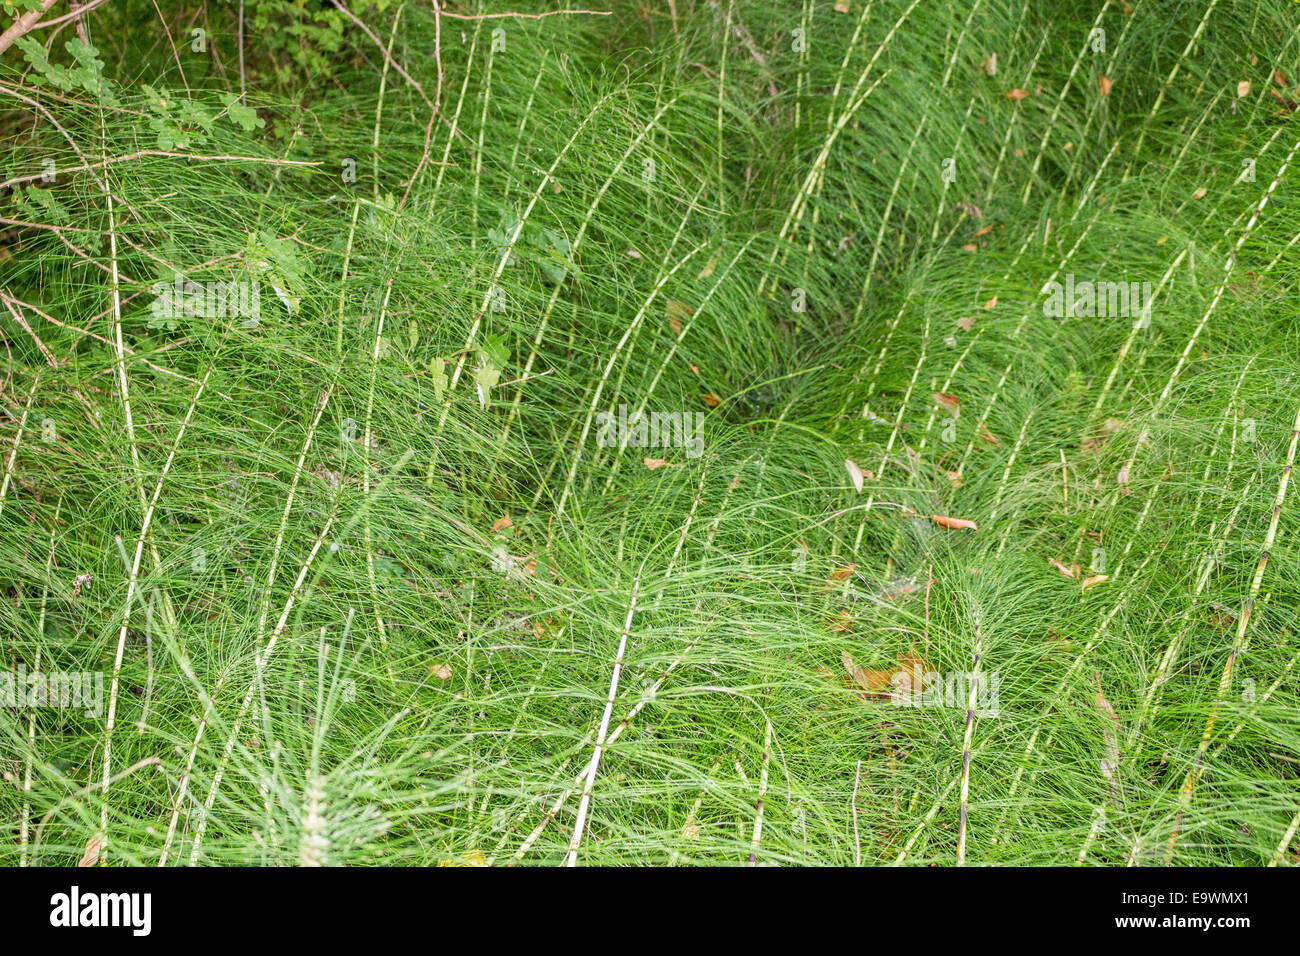 Mauvaises herbes vertes et des brins d'herbe de prendre une texture de fond de verdure. Tiges blanches fait irregularg et formes géométriques Banque D'Images